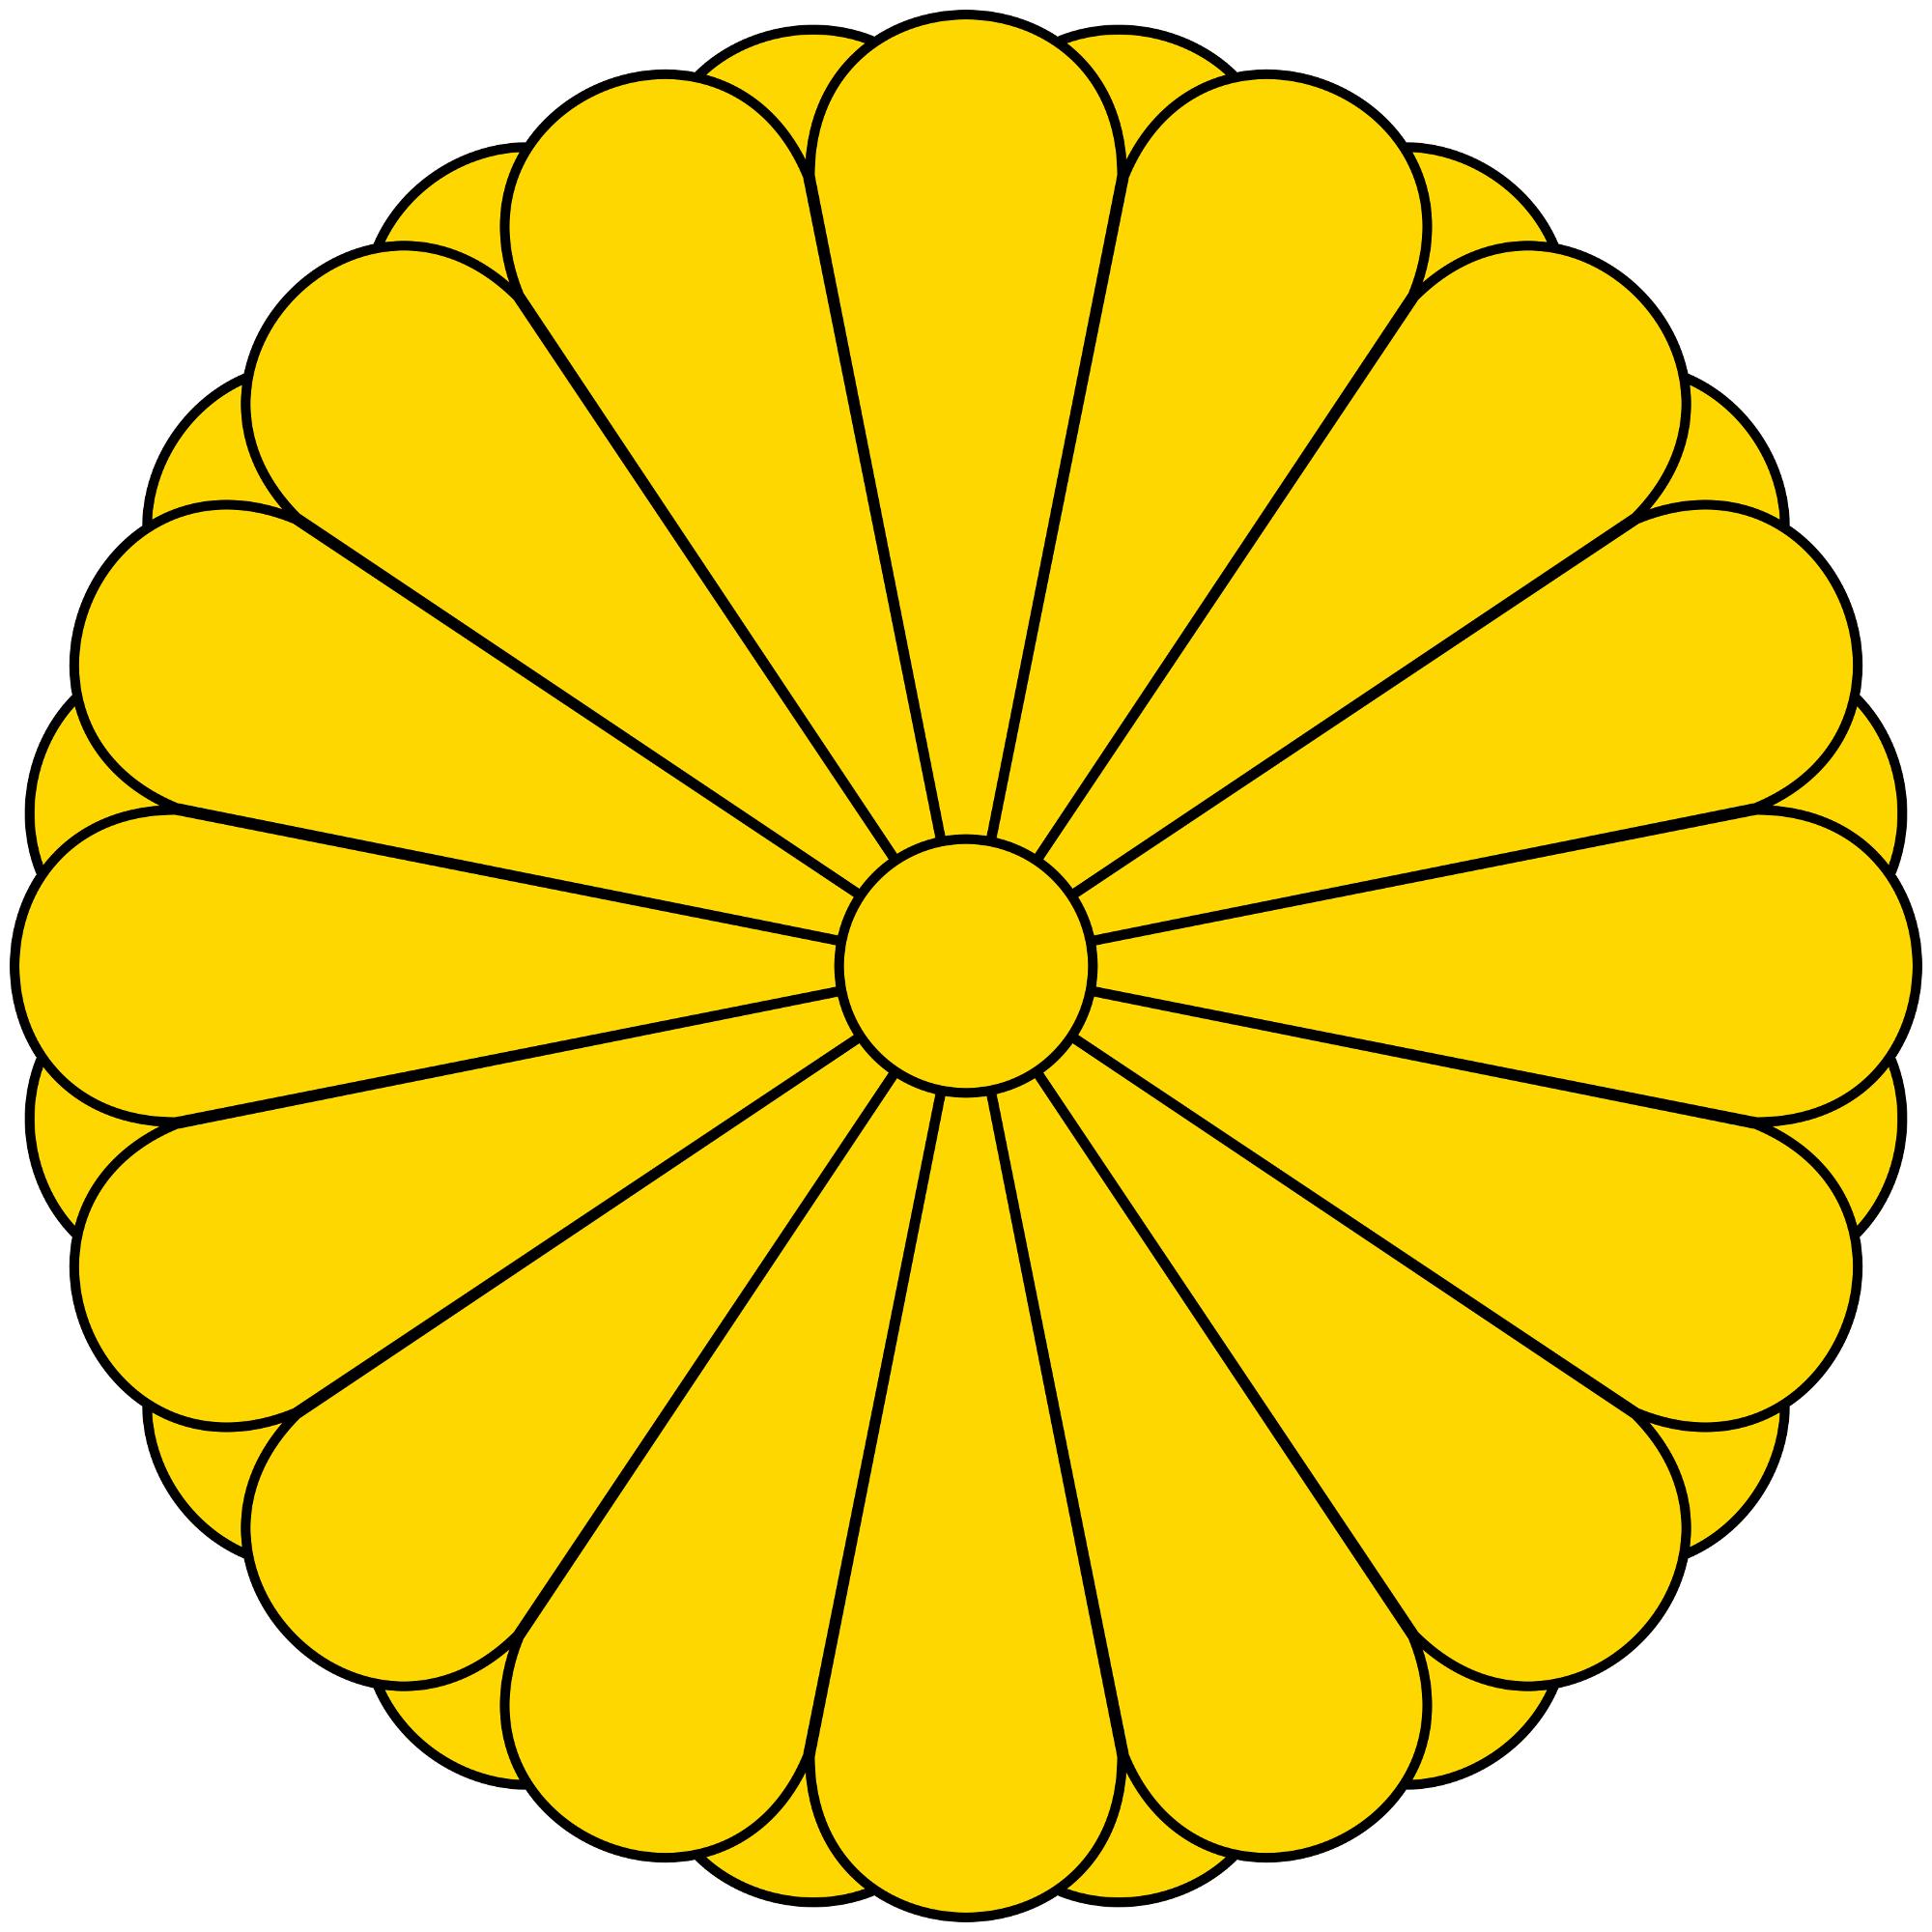 非指数量),即菊花纹章被广泛作为日本代表性的国家徽章而使用